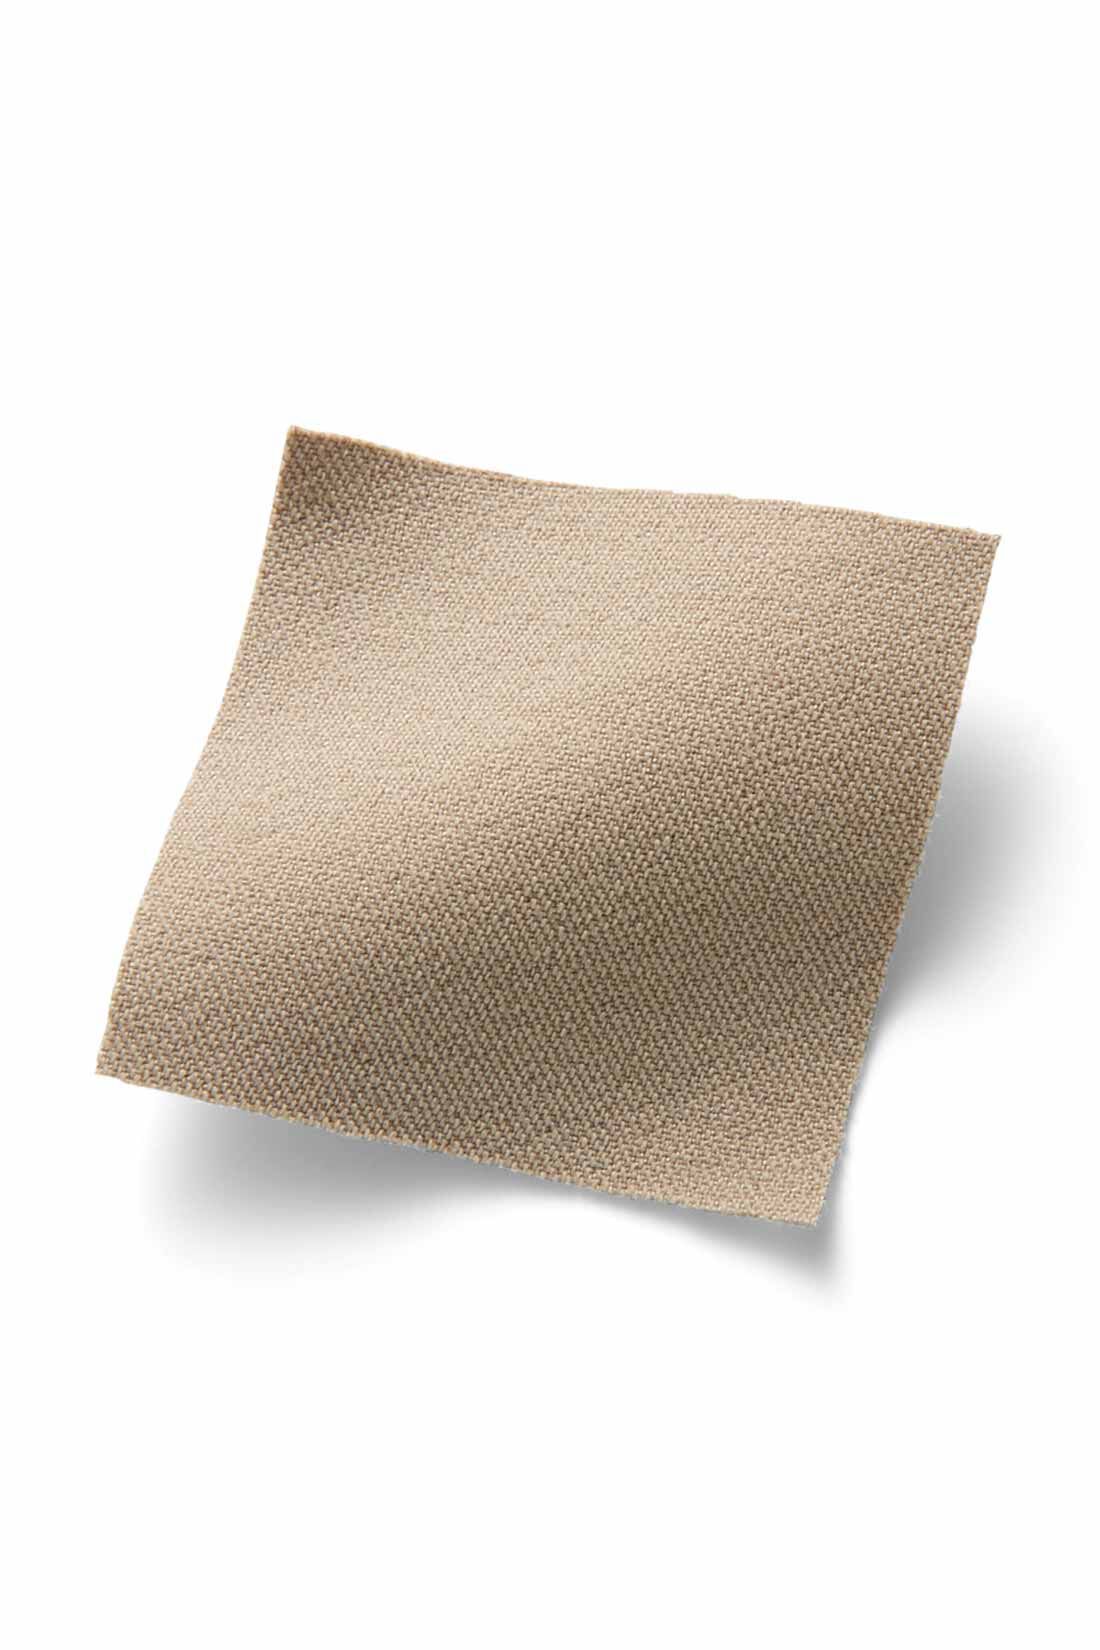 IEDIT[イディット]　ぐいっとしなやか すらりと美脚！ ストレッチ布はく素材のエアノビテーパードパンツ〈ベージュ〉|ストレッチ素材ながら綿のようなマットな表面感が品よくきれい。脚のラインを拾いにくい厚みと張り感で高見えします。